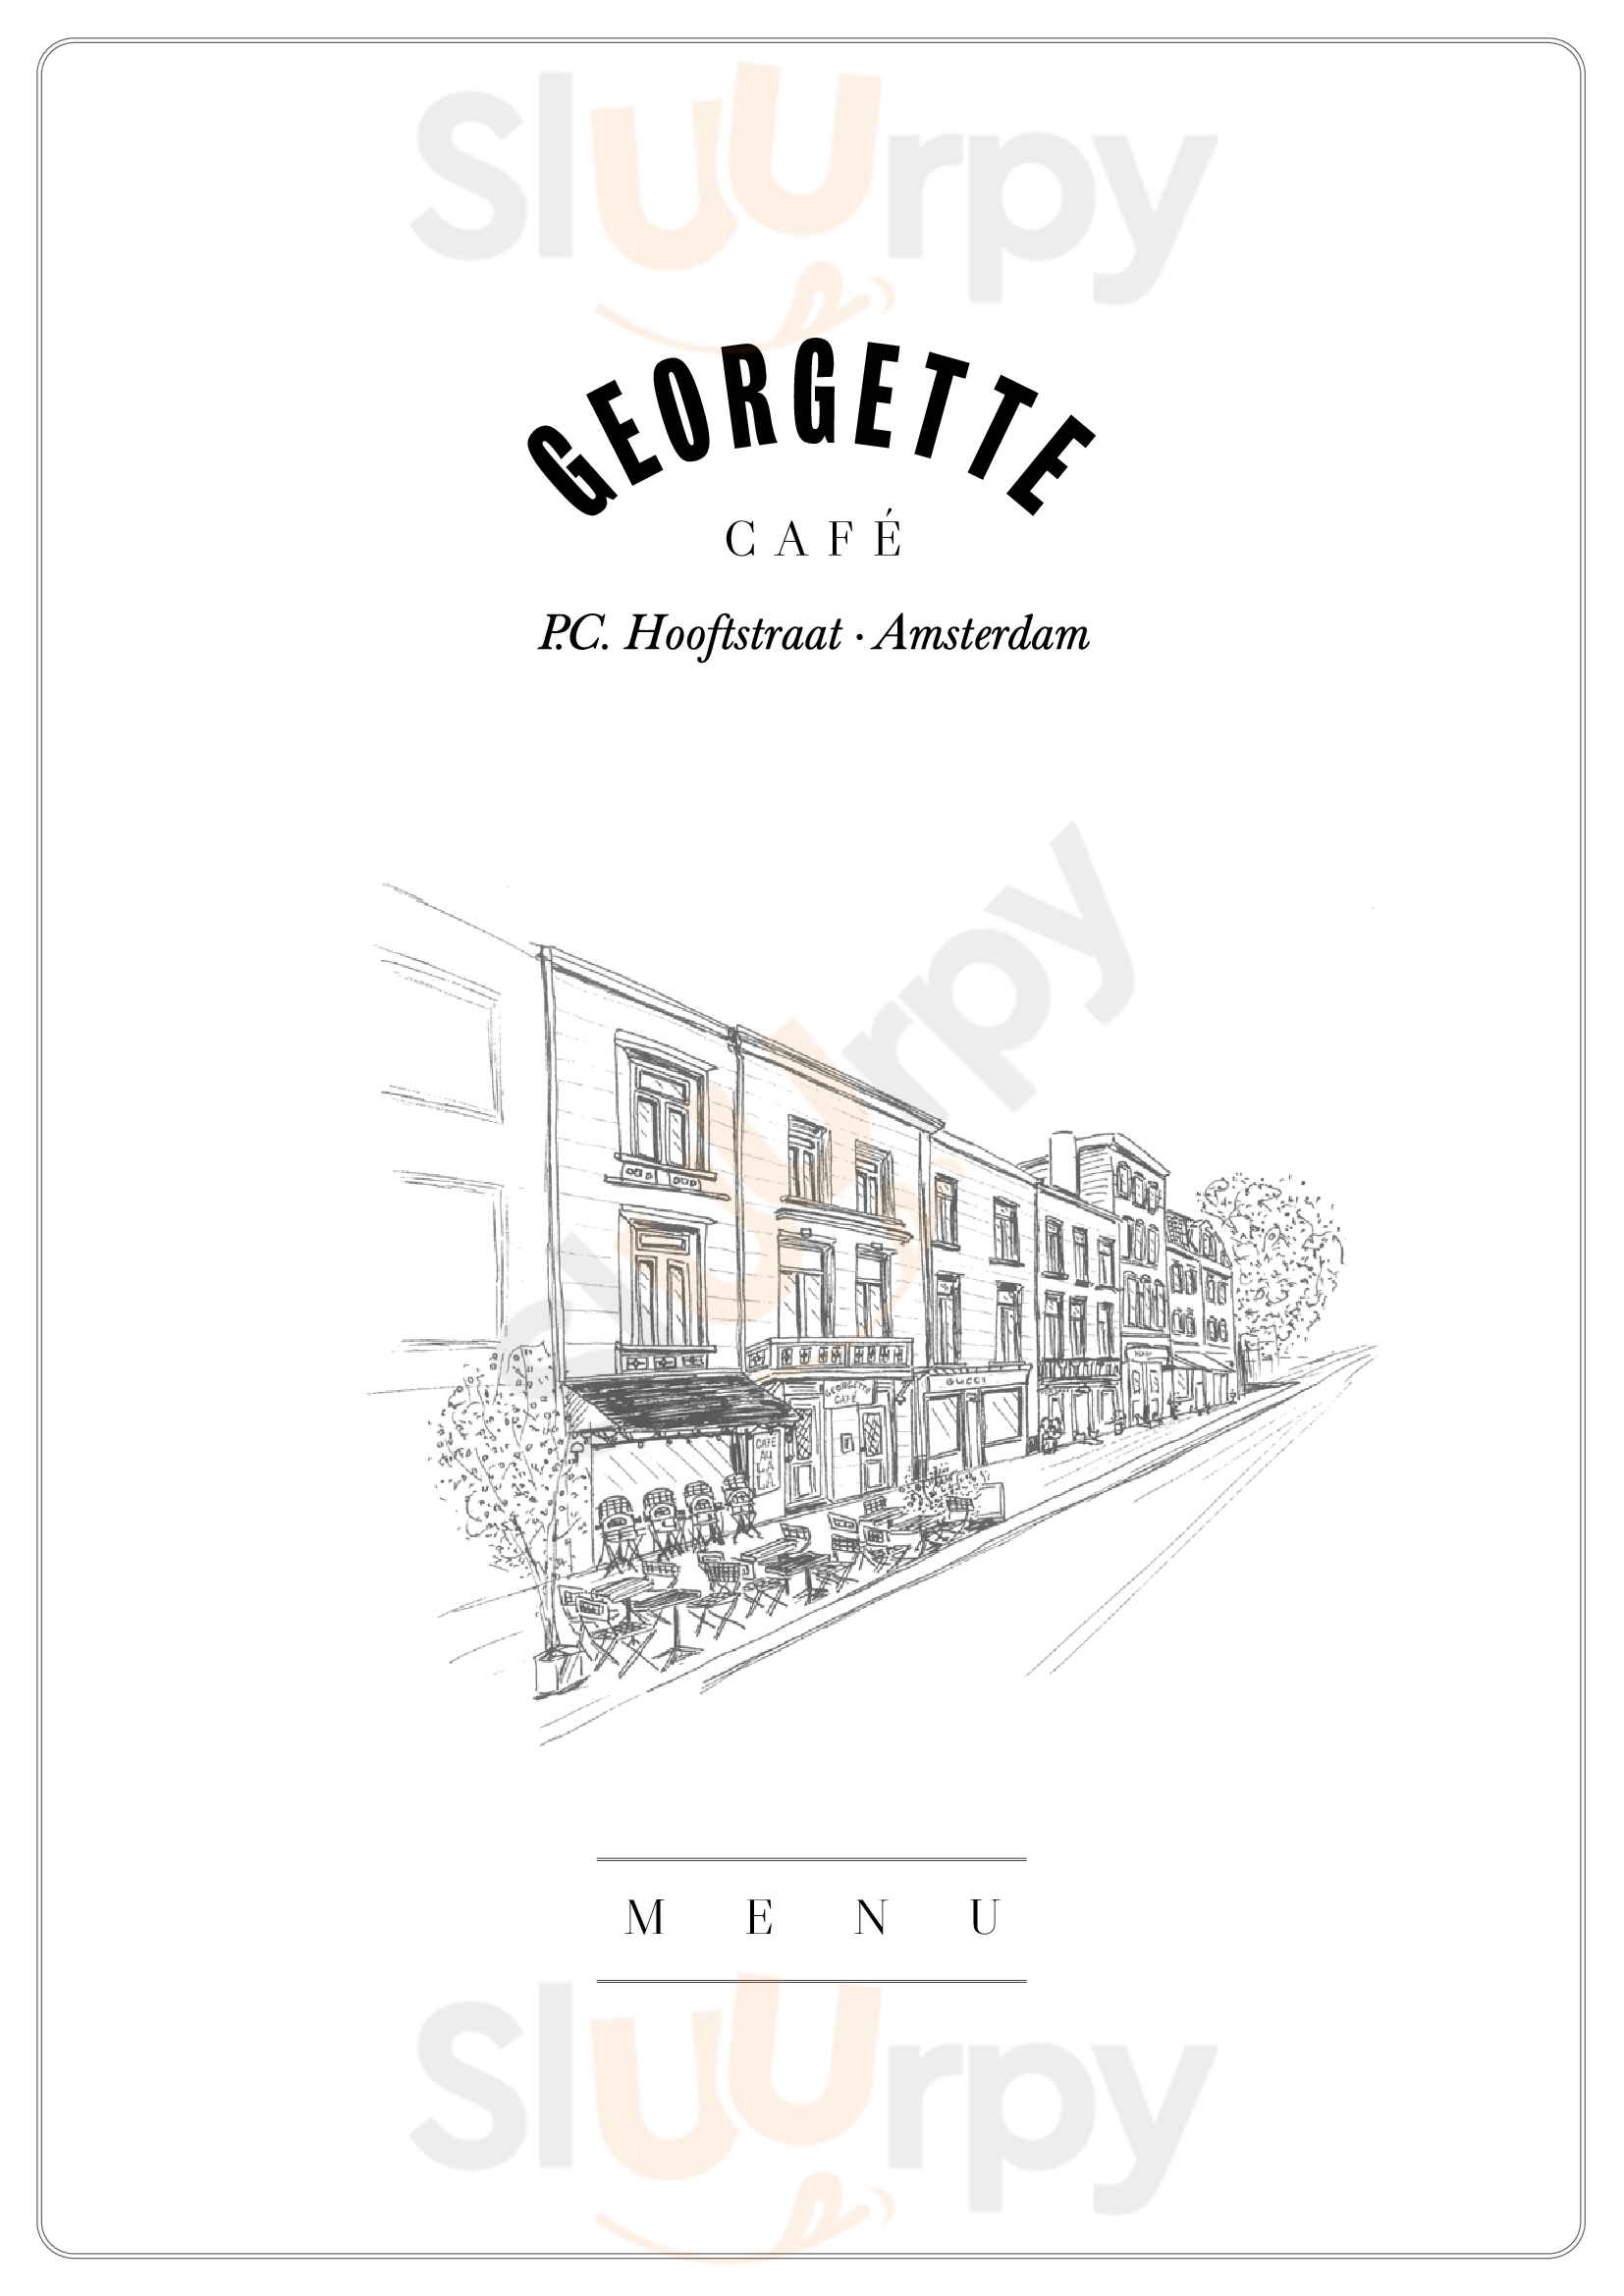 Café Georgette Amsterdam Menu - 1